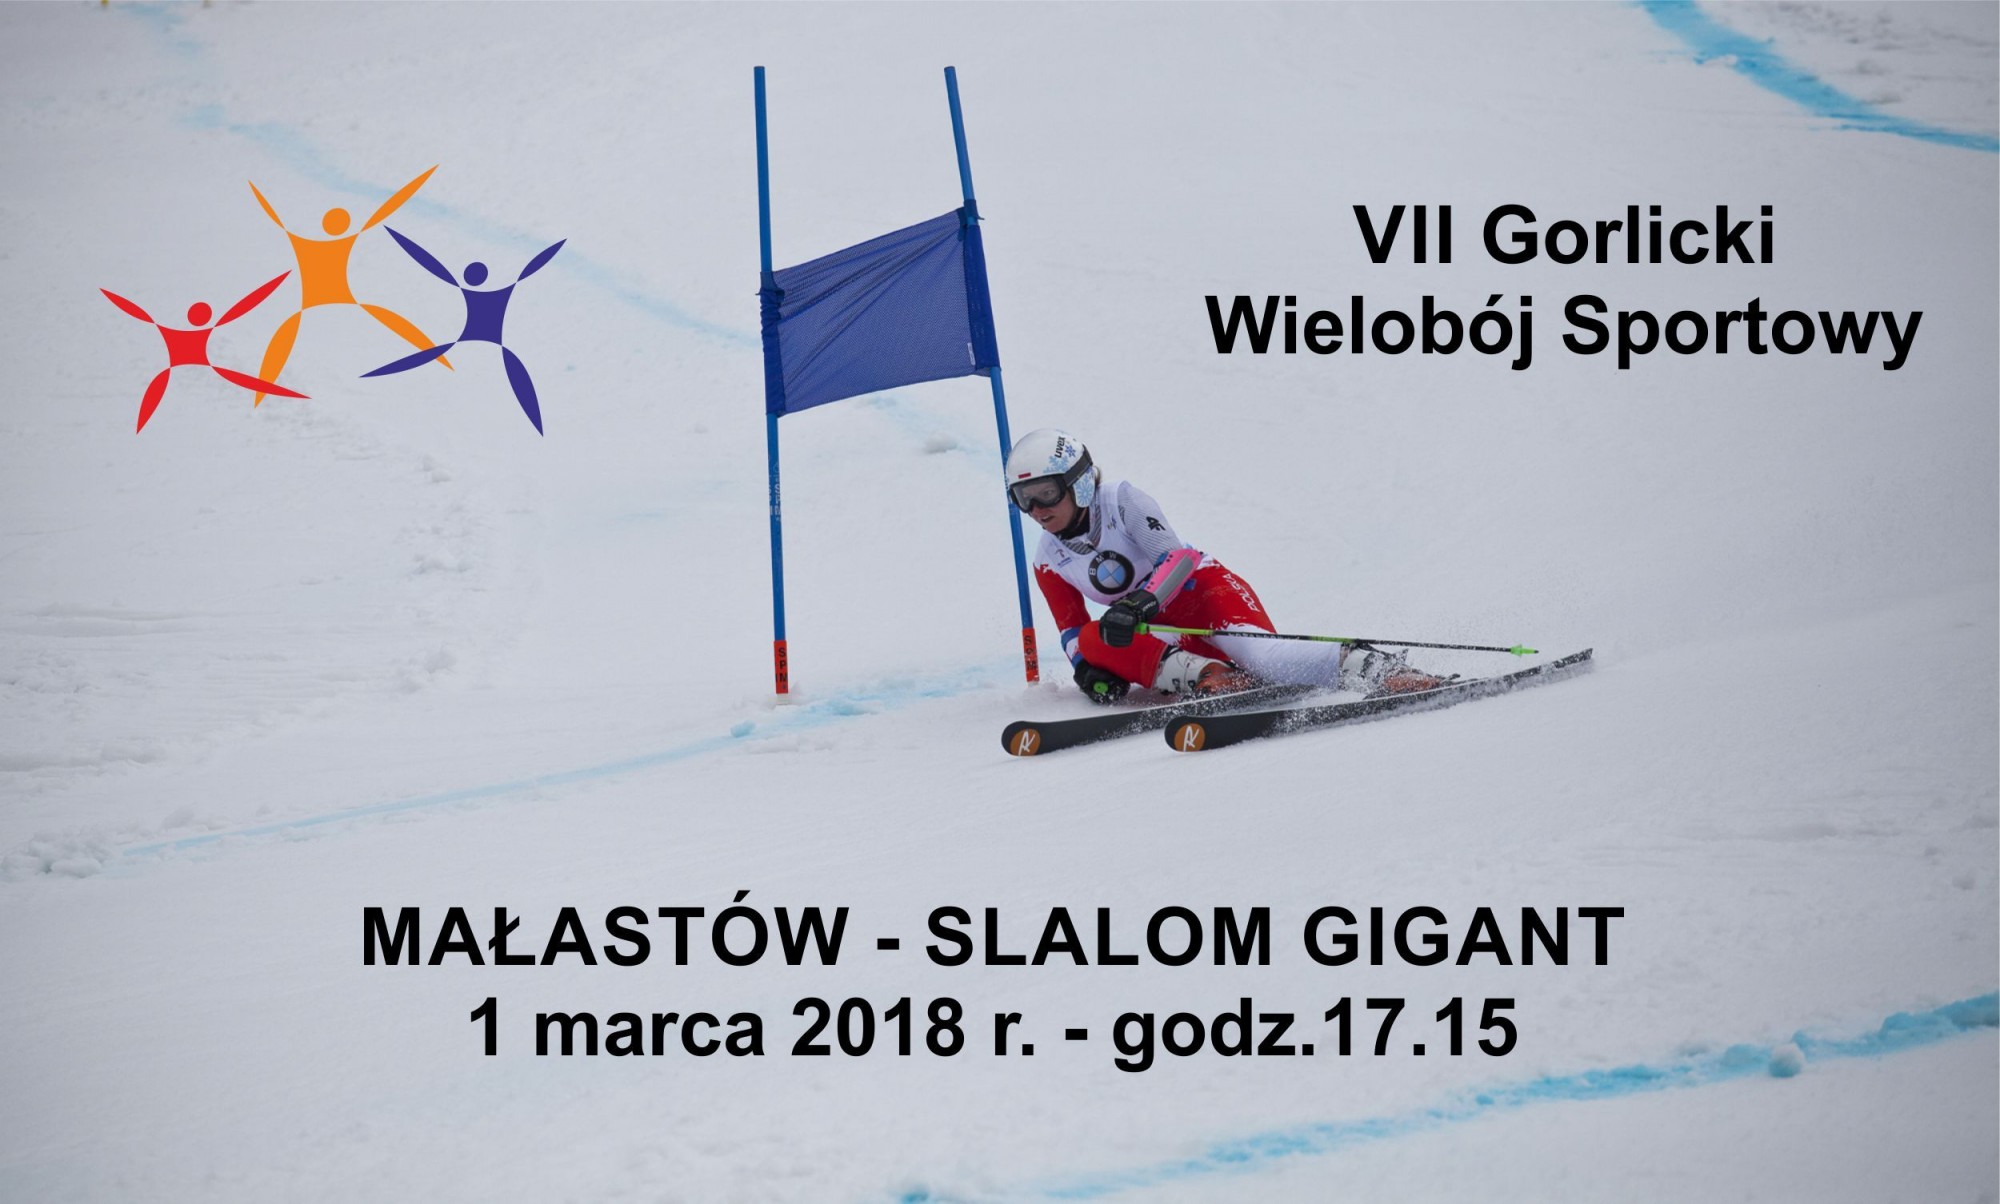 VII Gorlicki Wielobój Sportowy - Slalom Gigant